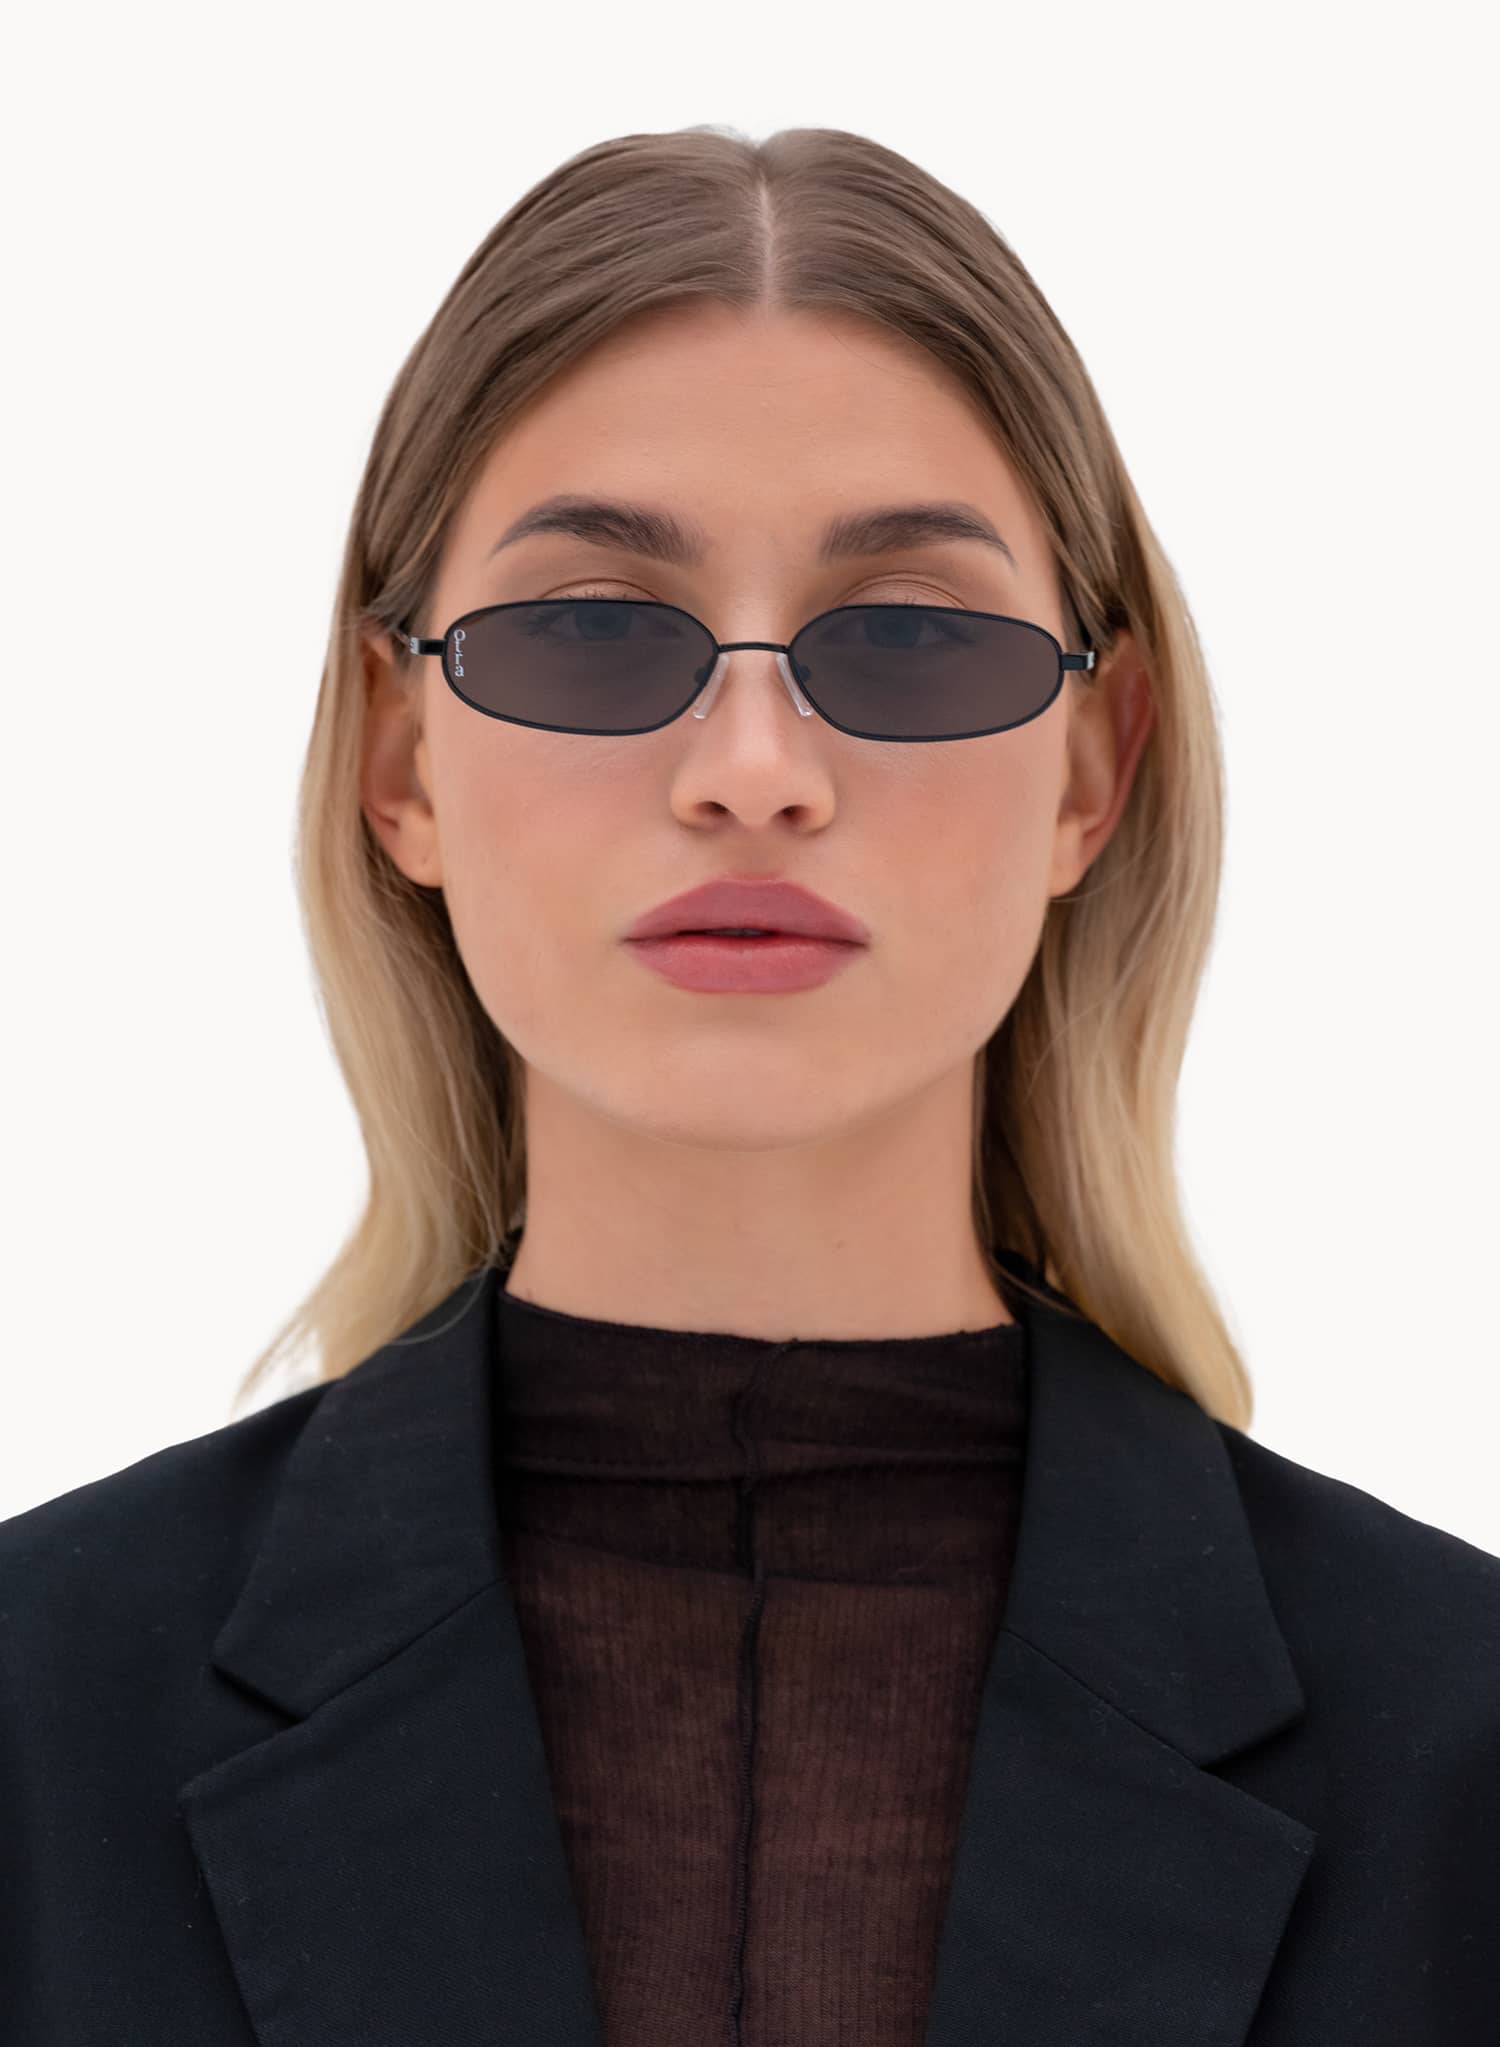 Model wearing Drew slim metal sunglasses in black